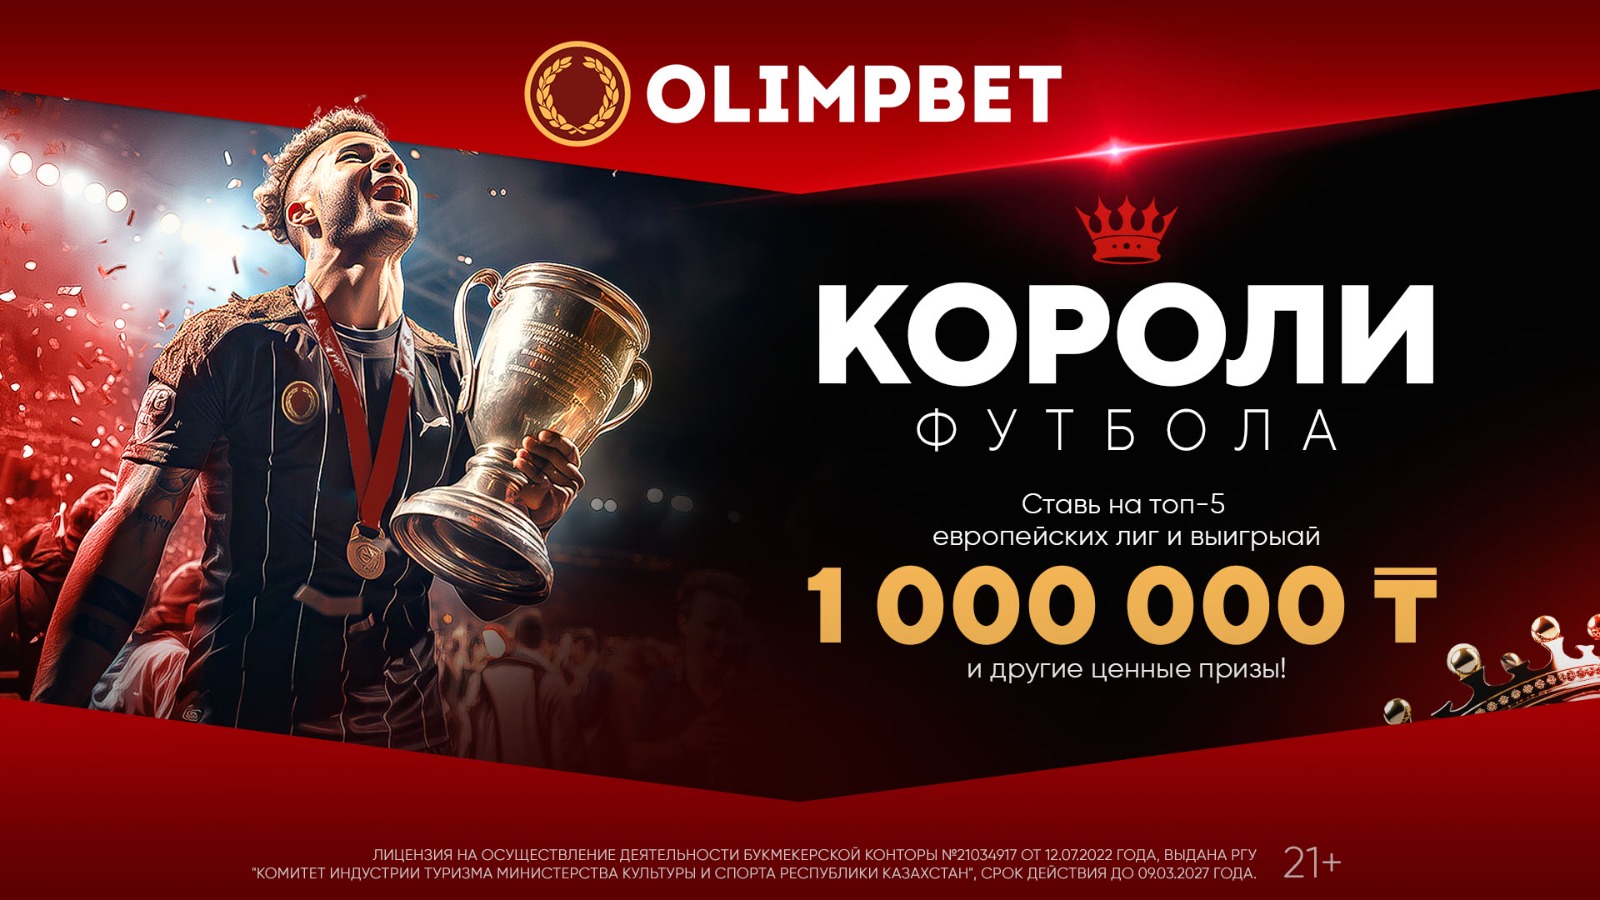 Olimpbet представляет акцию для поклонников игры миллионов – «Короли футбола»